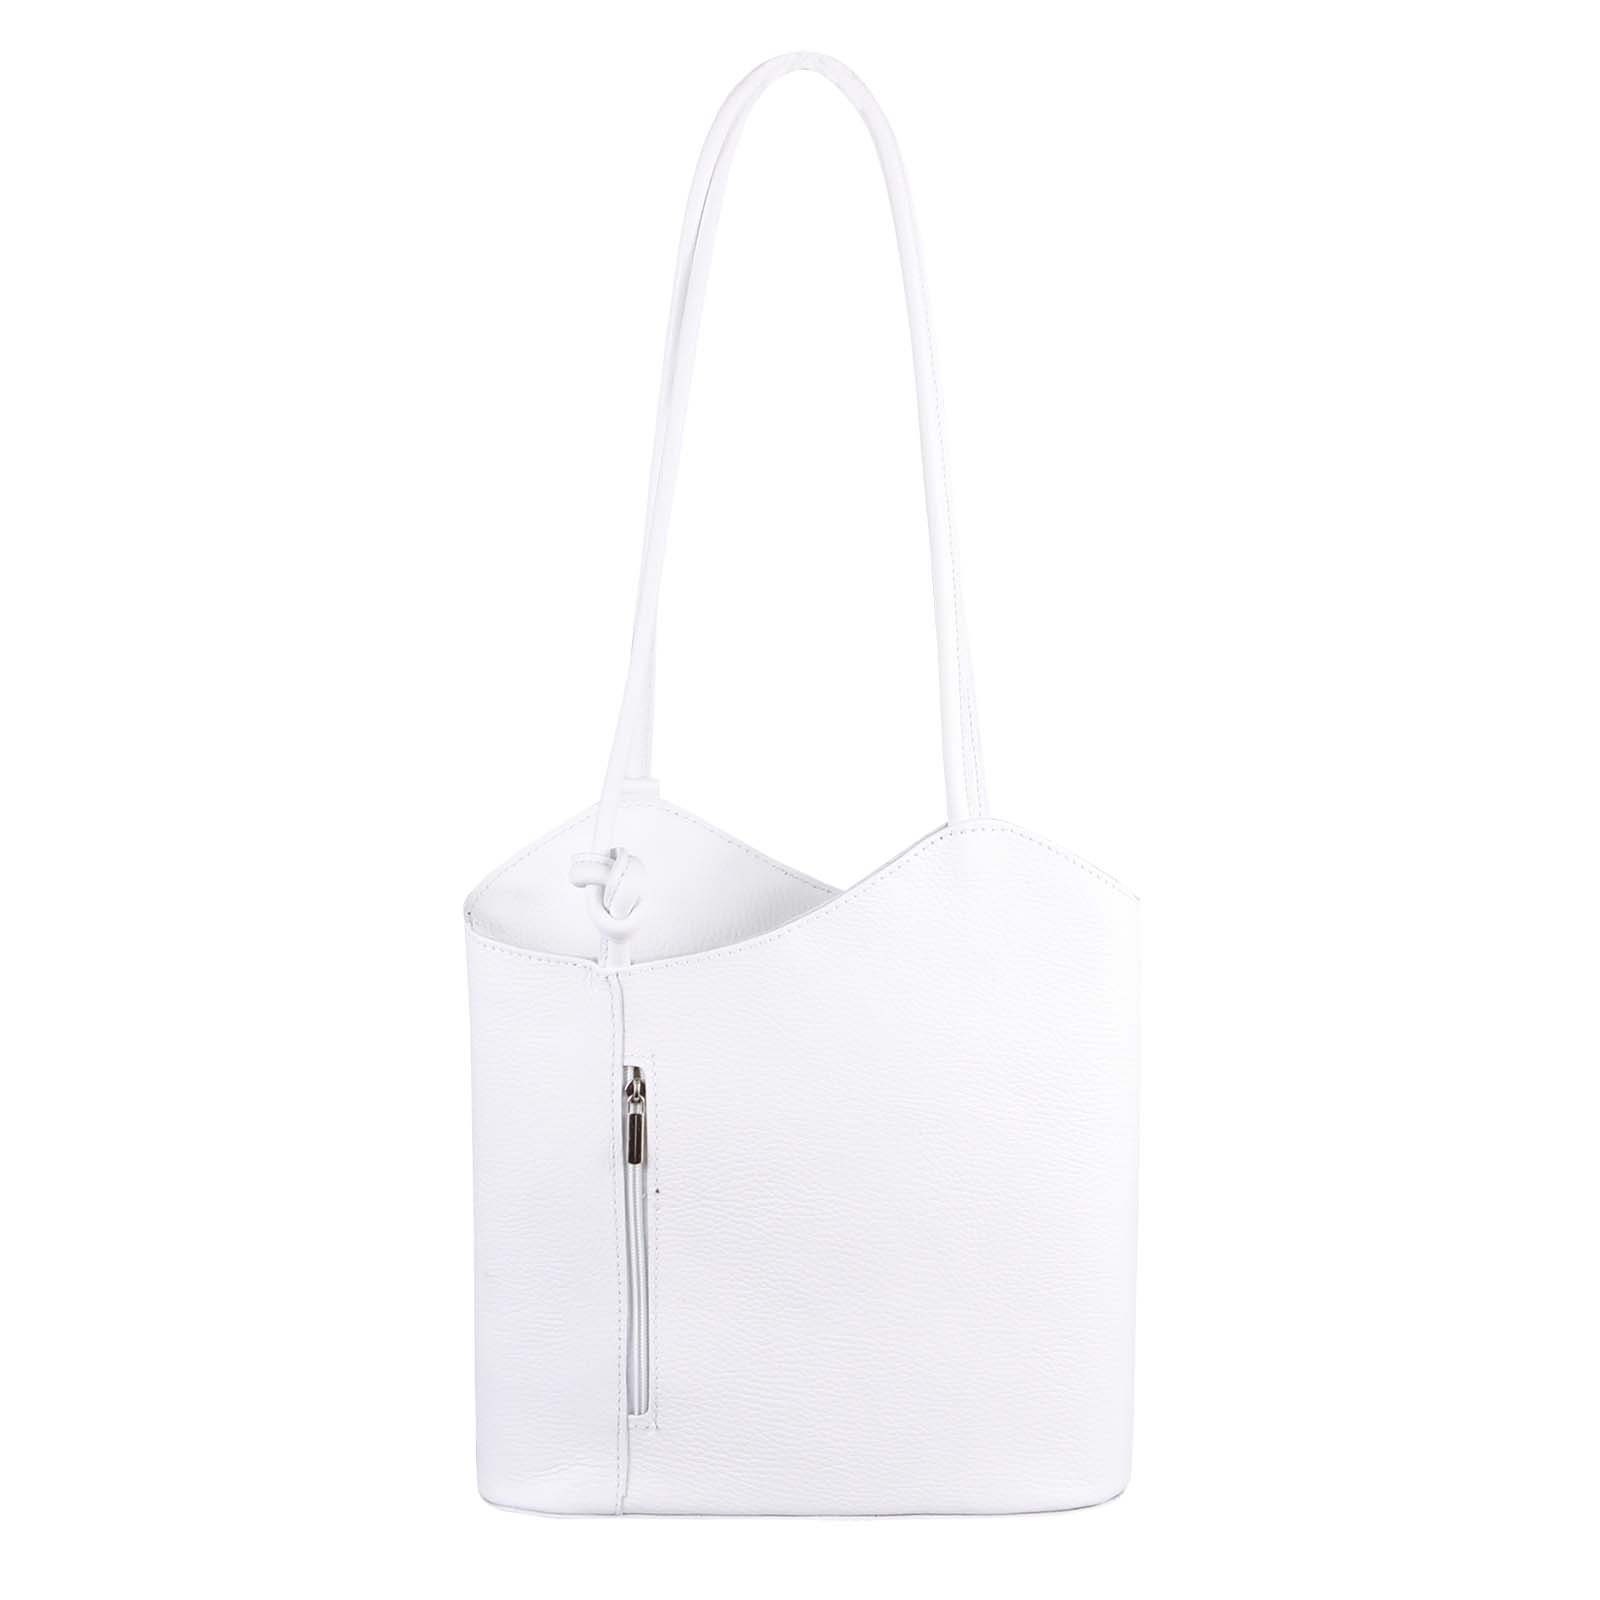 ITALYSHOP24 Rucksack Made in Italy Damen Leder Tasche Schultertasche, als Rucksack & Handtasche/Schultertasche tragbar